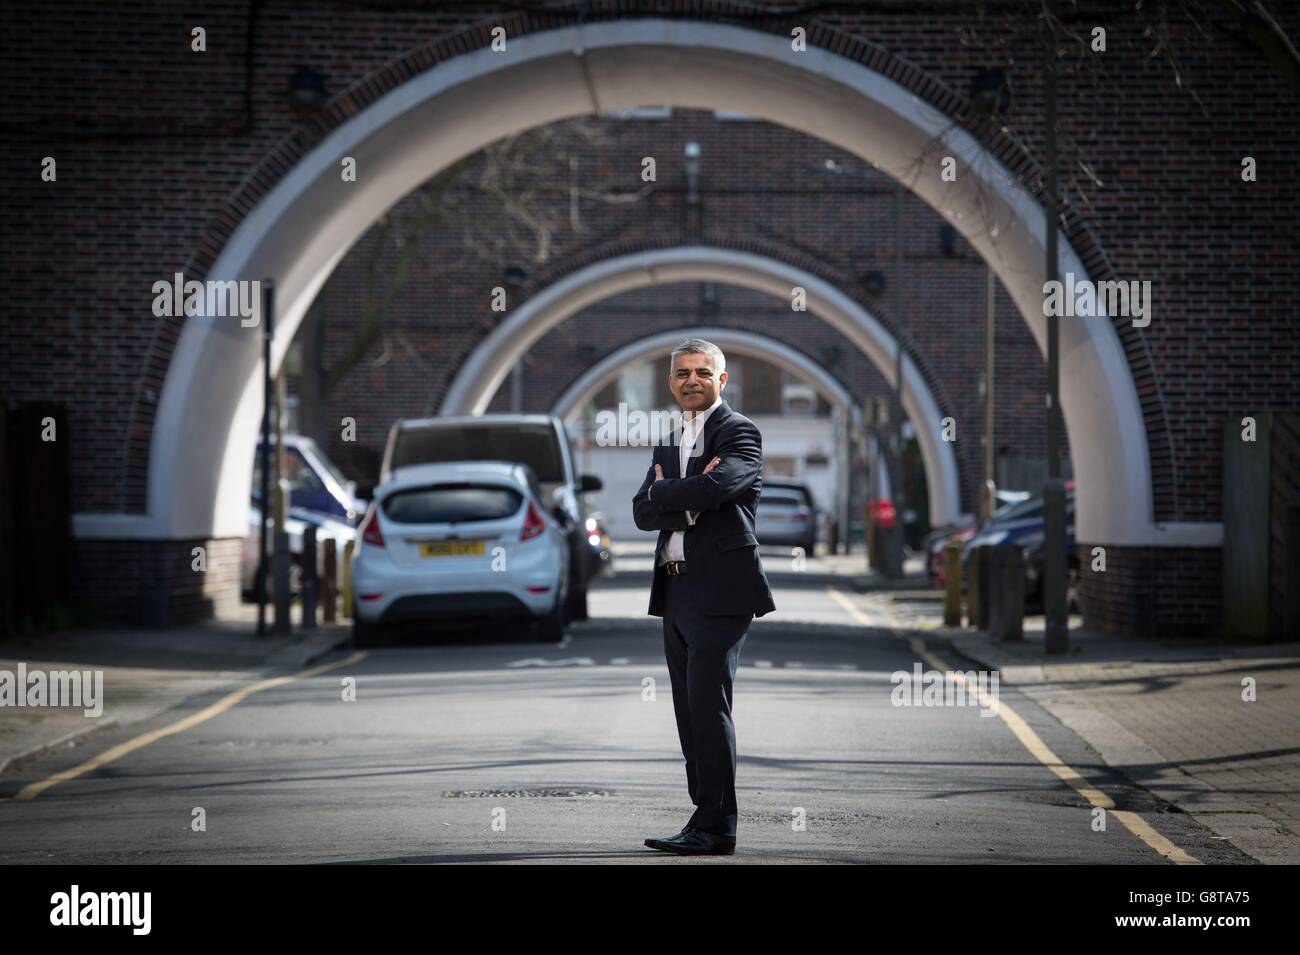 Sadiq Khan, candidat travailliste au maire de Londres, devant le Henry Prince Estate, près de Wandsworth à Londres, où il a grandi, après avoir prononcé un discours sur ses projets de logement abordable dans la capitale. Banque D'Images